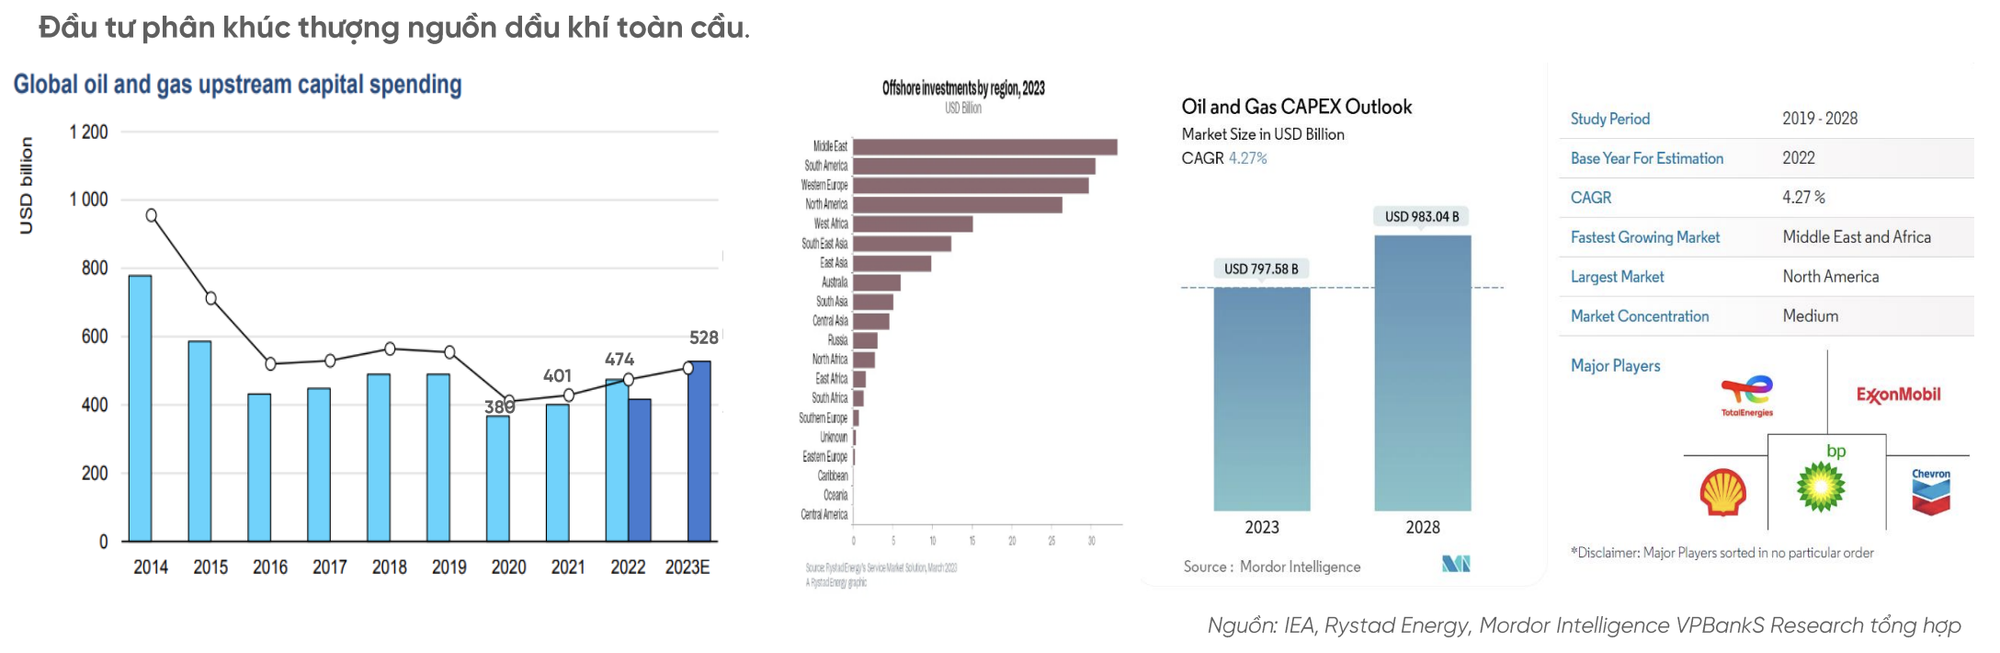 Bức tranh lợi nhuận ngành dầu khí năm 2023: Có vui, có buồn